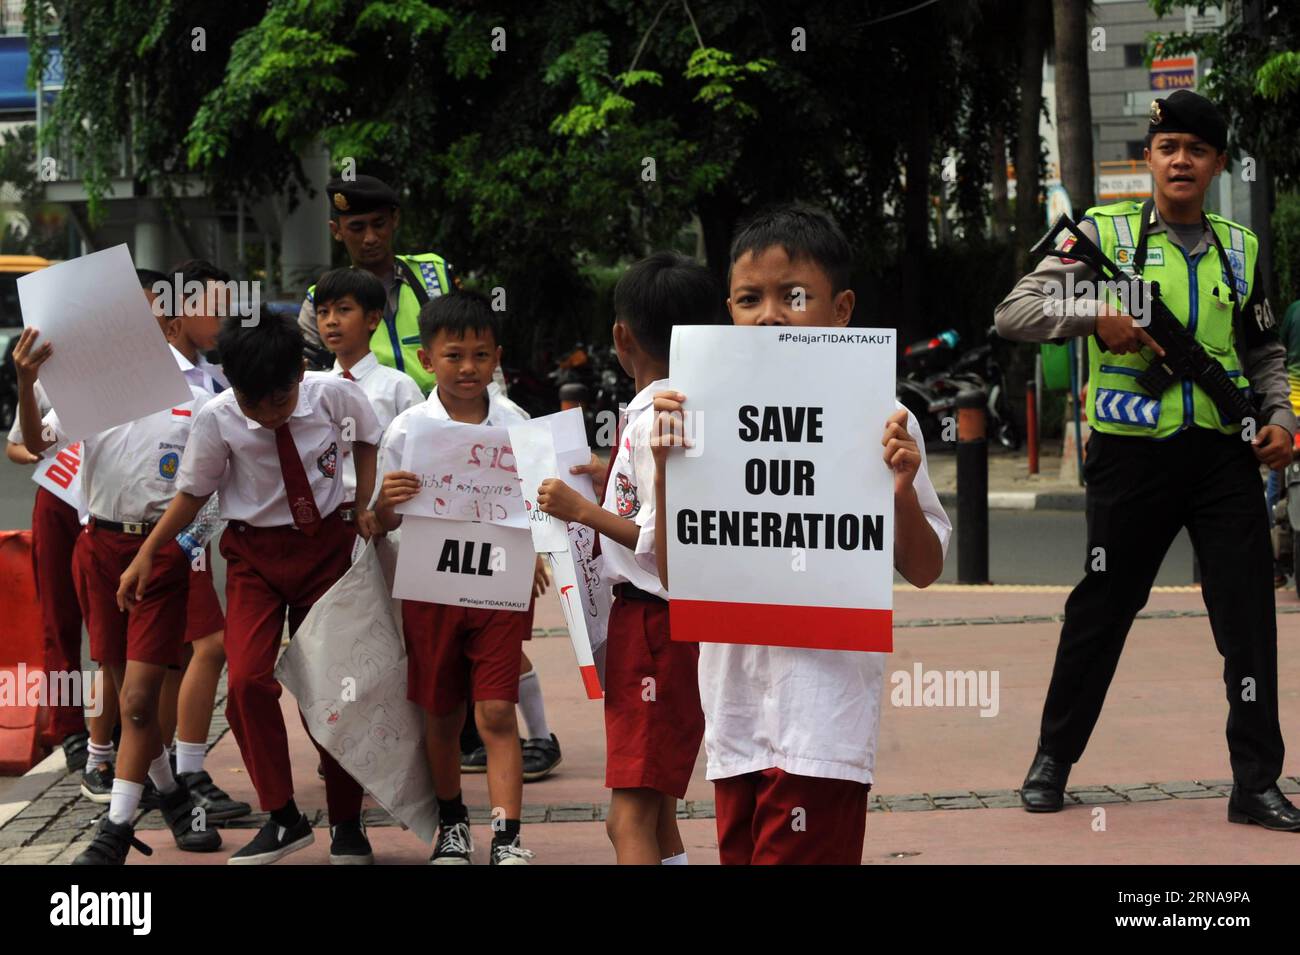 (160115) -- GIACARTA, 15 gennaio 2016 -- studenti indonesiani tengono cartelli e parlano con gli agenti di polizia armati dopo una manifestazione antiterroristica a Giacarta, capitale dell'Indonesia, 15 gennaio 2016. Almeno sette persone, tra cui cinque sospetti aggressori, sono morte in esplosioni di bombe e colpi di arma da fuoco nel centro di Giacarta giovedì, in quello che il presidente del paese ha definito un atto di terrorismo. ) INDONESIA-GIACARTA-ESPLOSIONE BOMBA DOPO AGUNGXKUNCAHYAXB. PUBLICATIONxNOTxINxCHN 160115 Giacarta 15 gennaio 2016 studenti indonesiani tengono cartelli e parlano con gli ufficiali di polizia armati dopo il raduno antiterrorismo a Giacarta Foto Stock